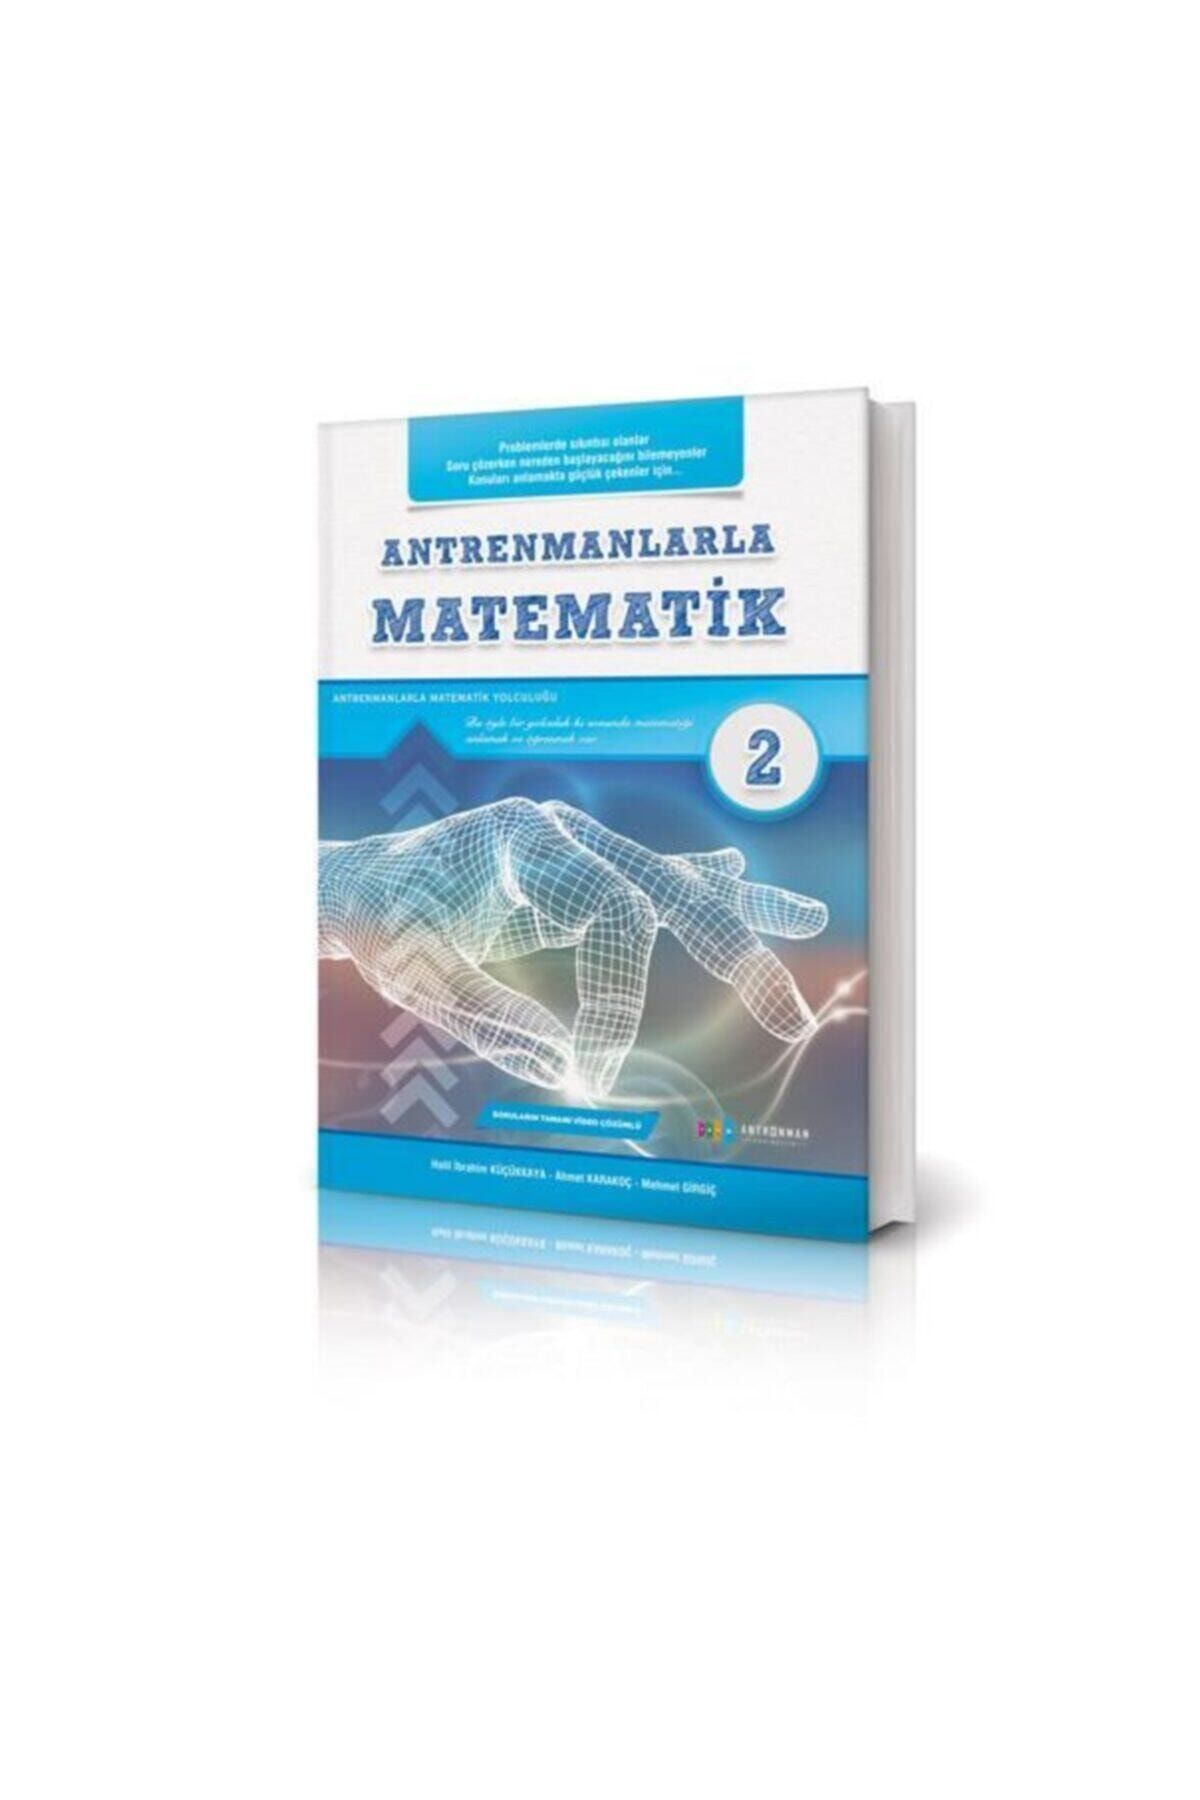 Antrenman Yayınları Antrenmanlarla Matematik - 2.